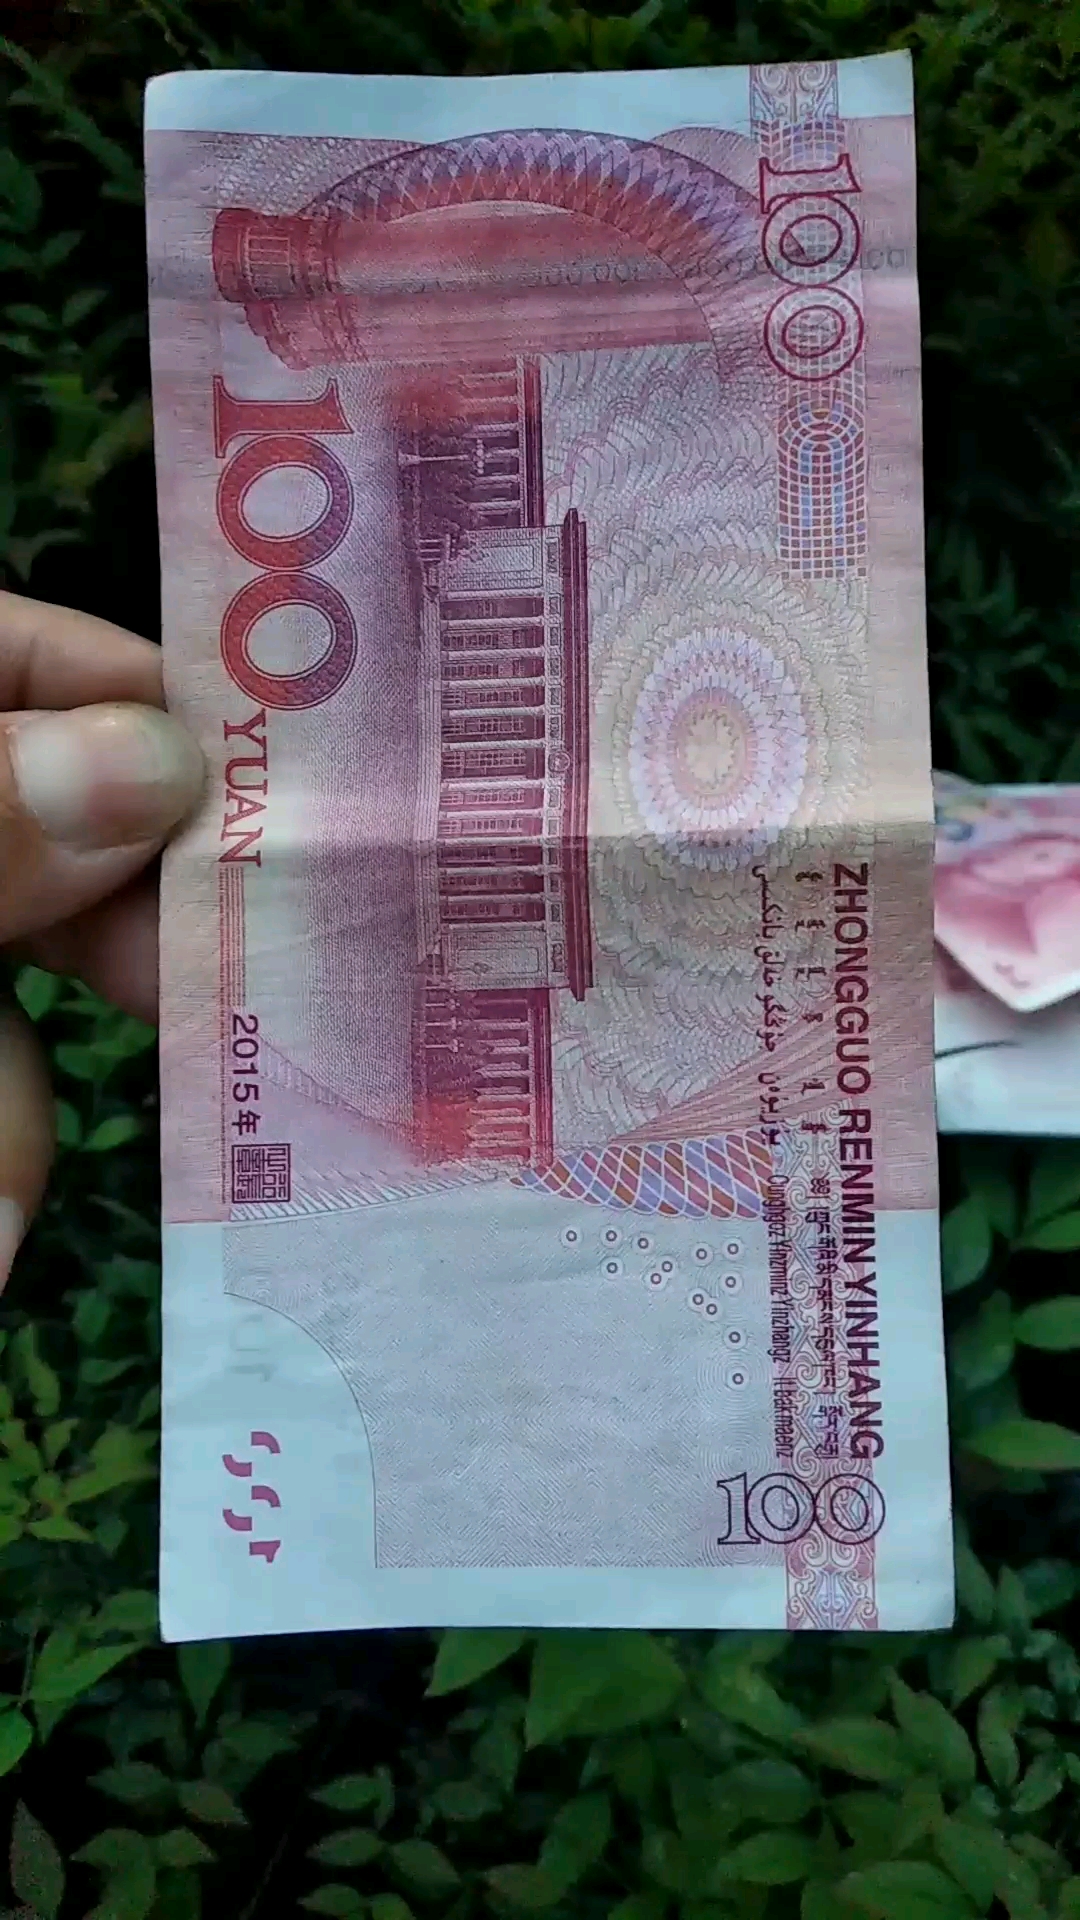 2015年一百元人民币图片